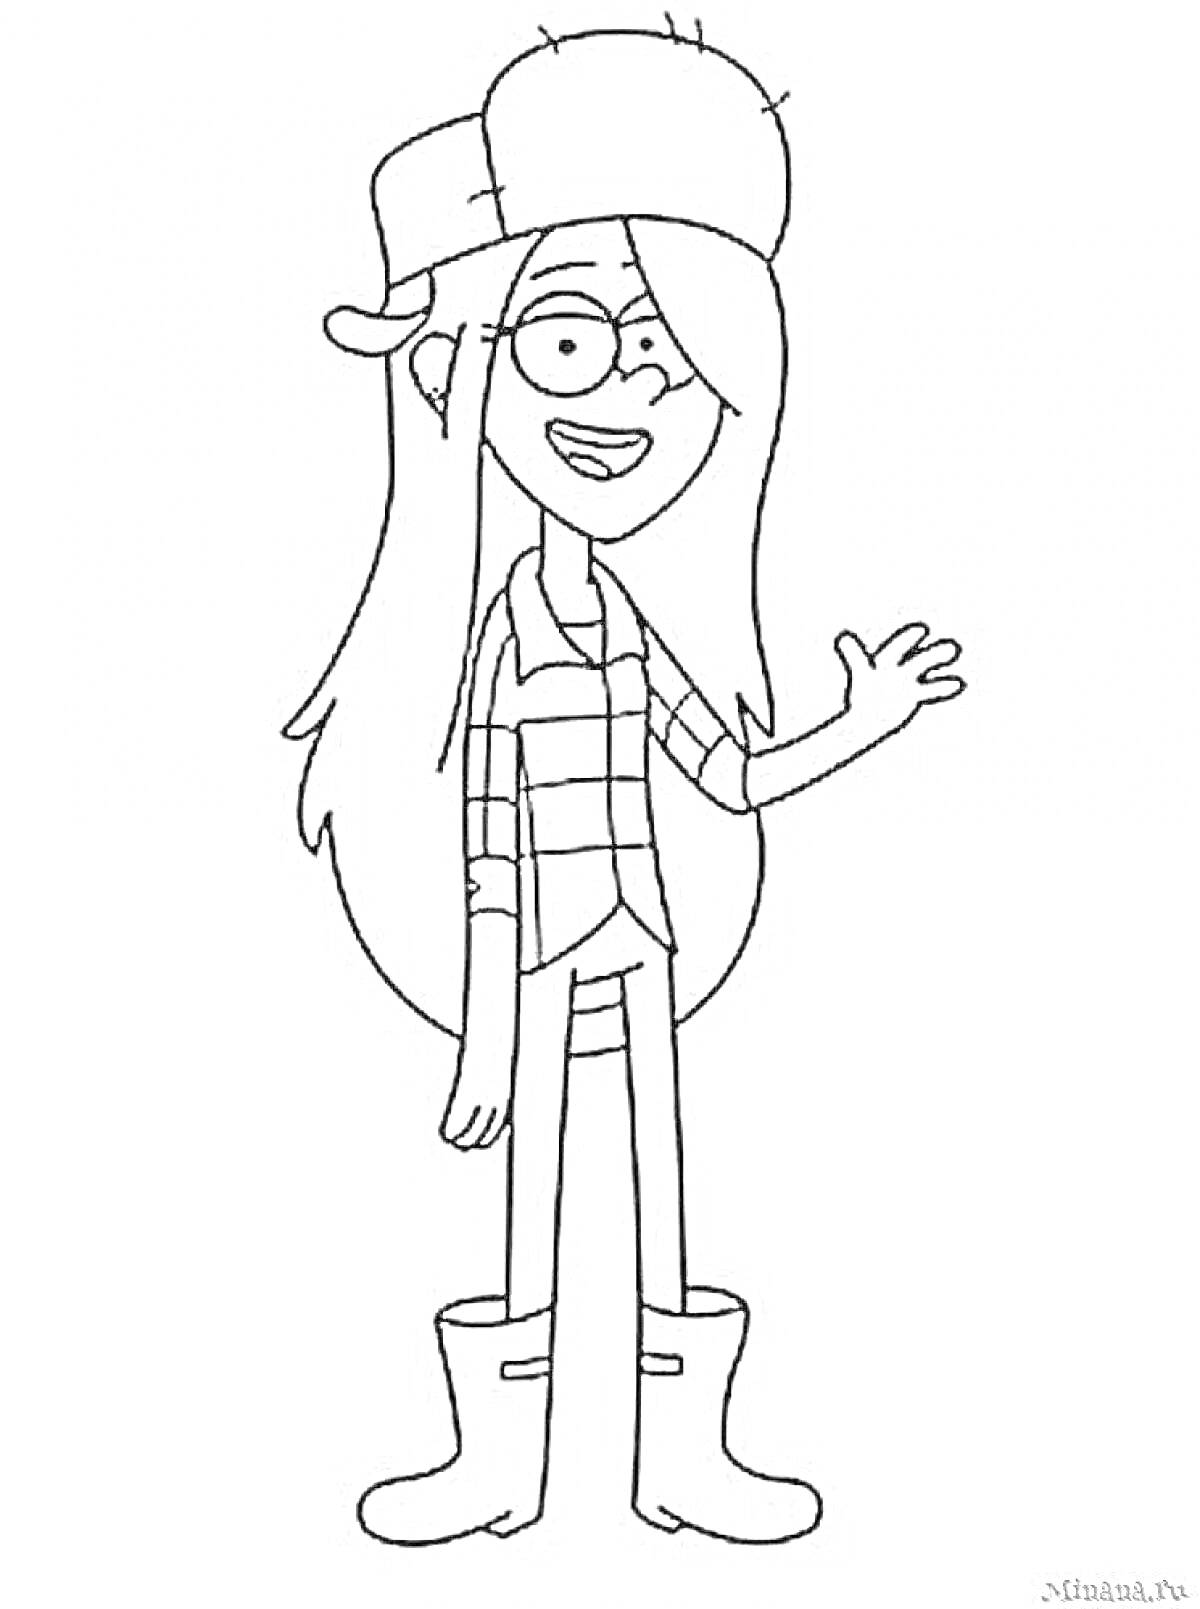 Раскраска Девушка в шапке, очках и сапогах, с длинными волосами, в клетчатой рубашке и футболке, поднимающая руку